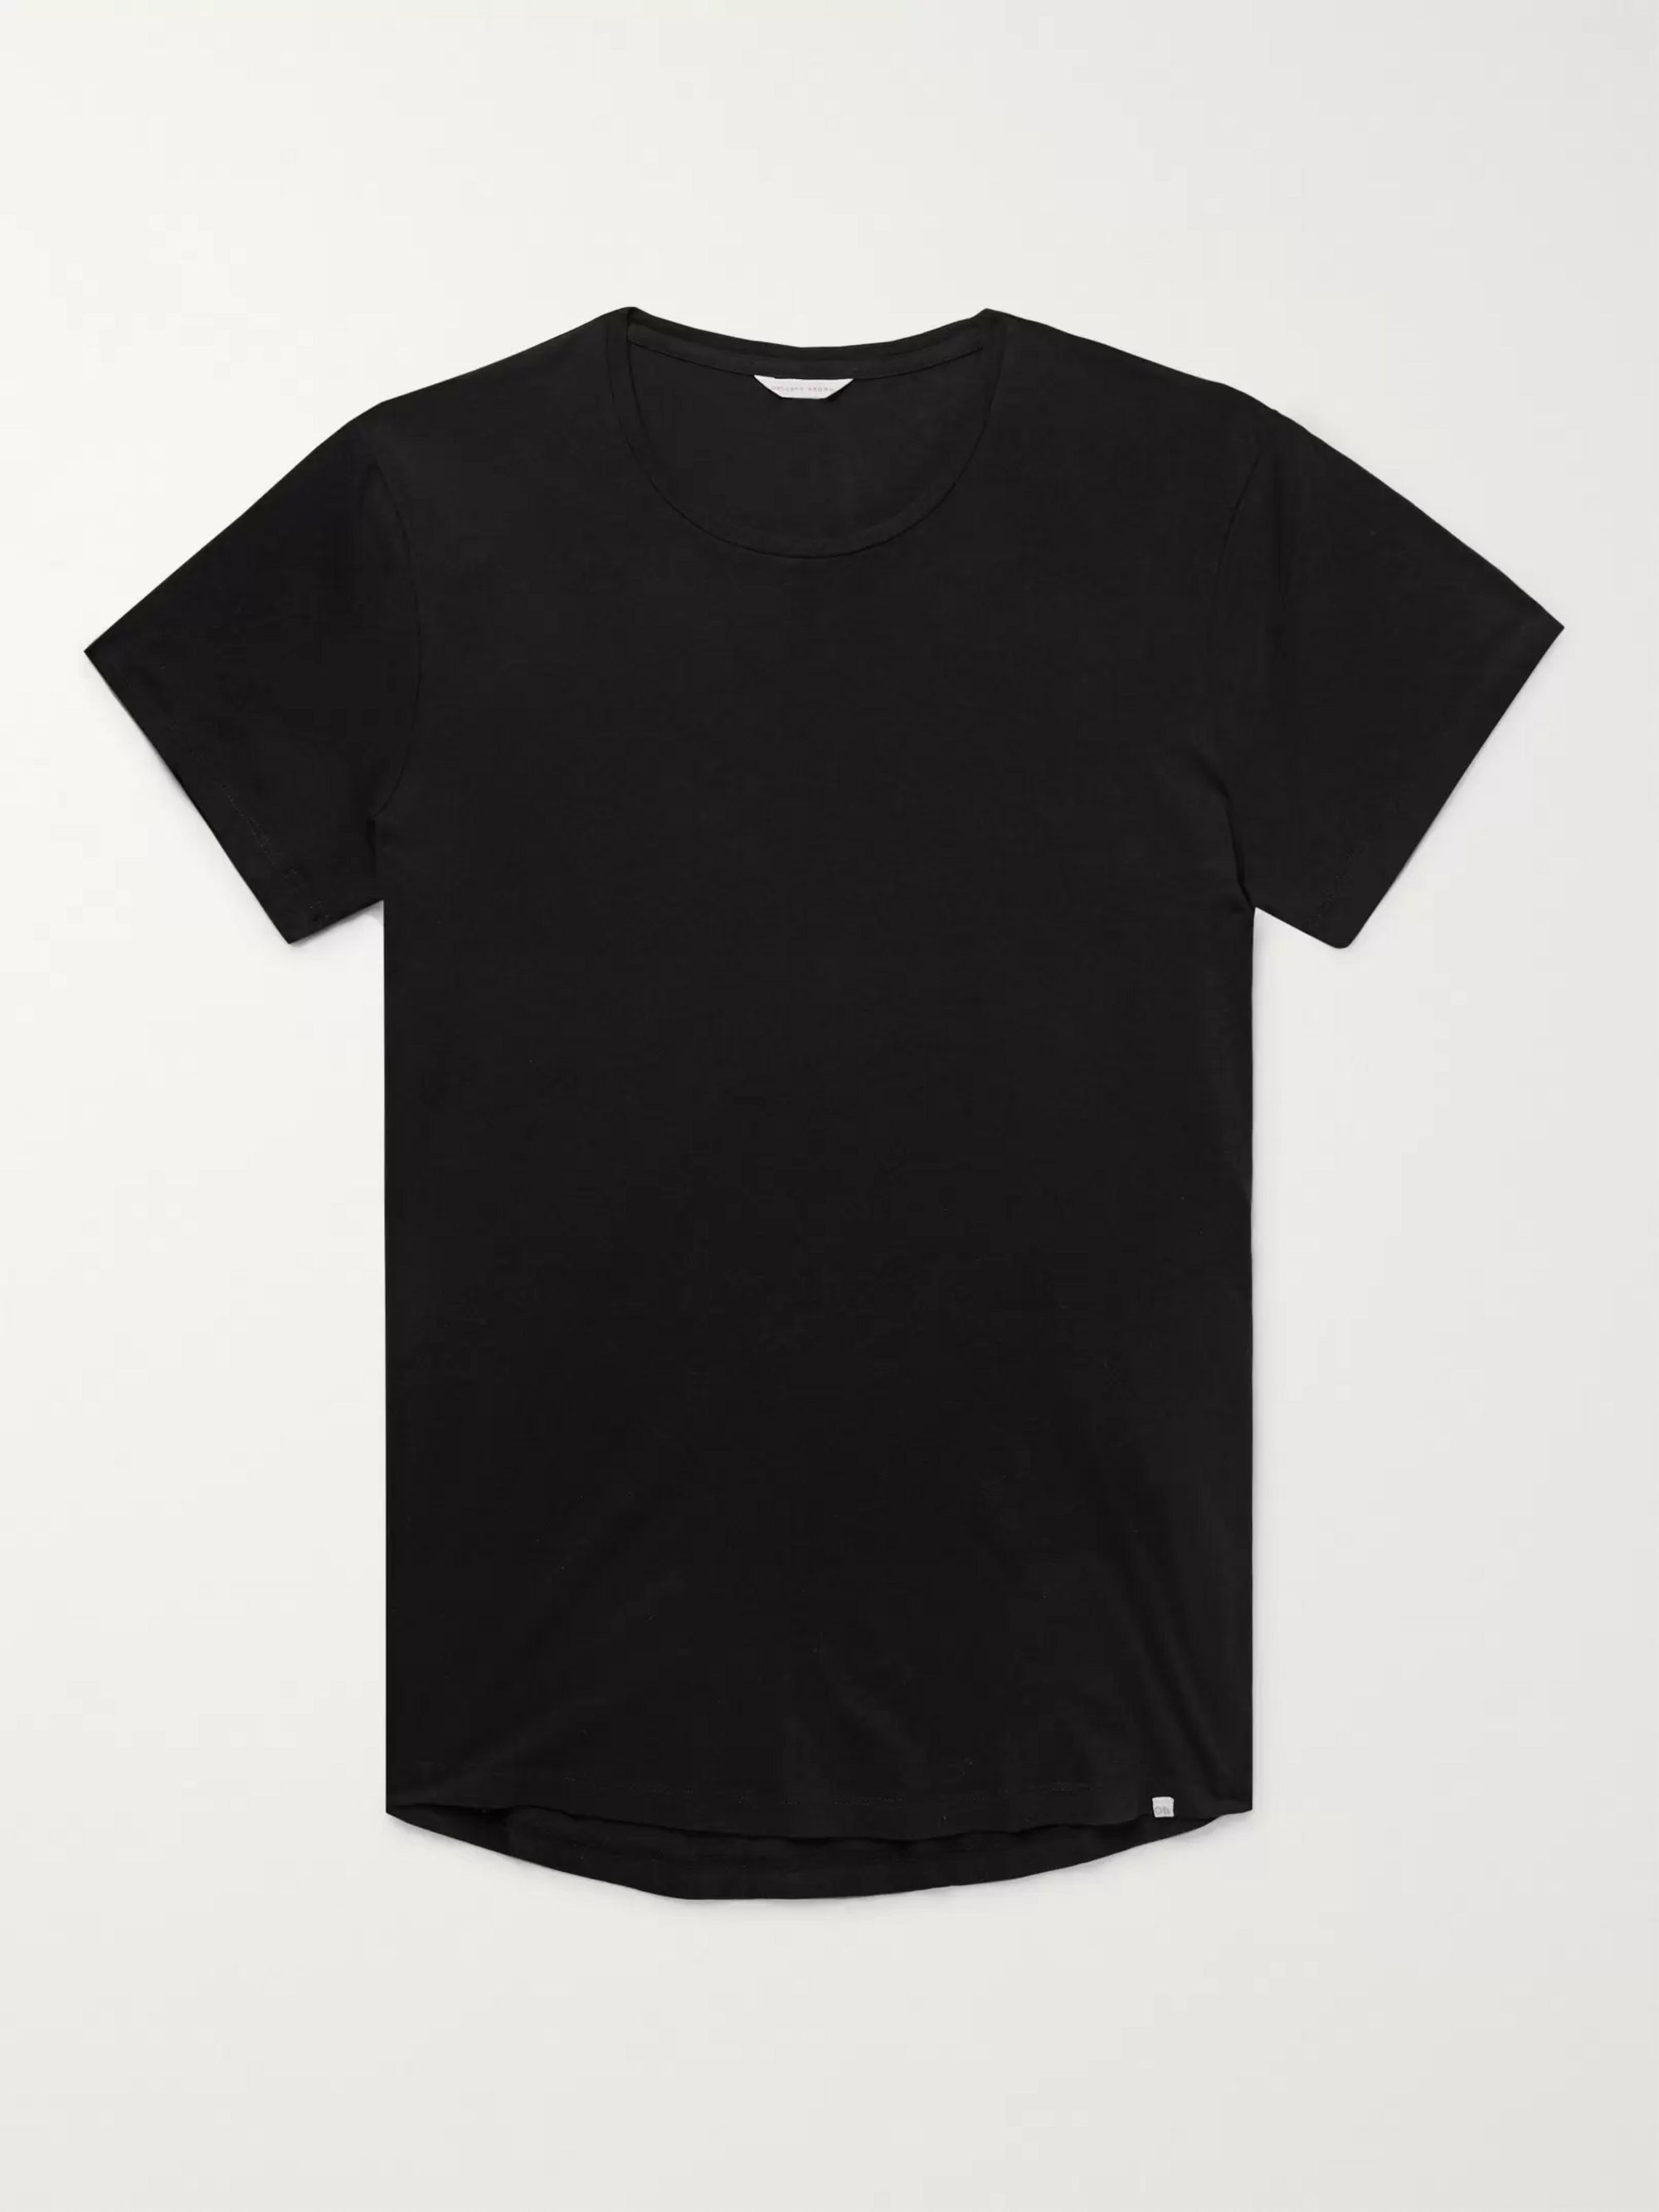 Black OB-T Slim-Fit Cotton-Jersey T-Shirt | ORLEBAR BROWN | MR PORTER